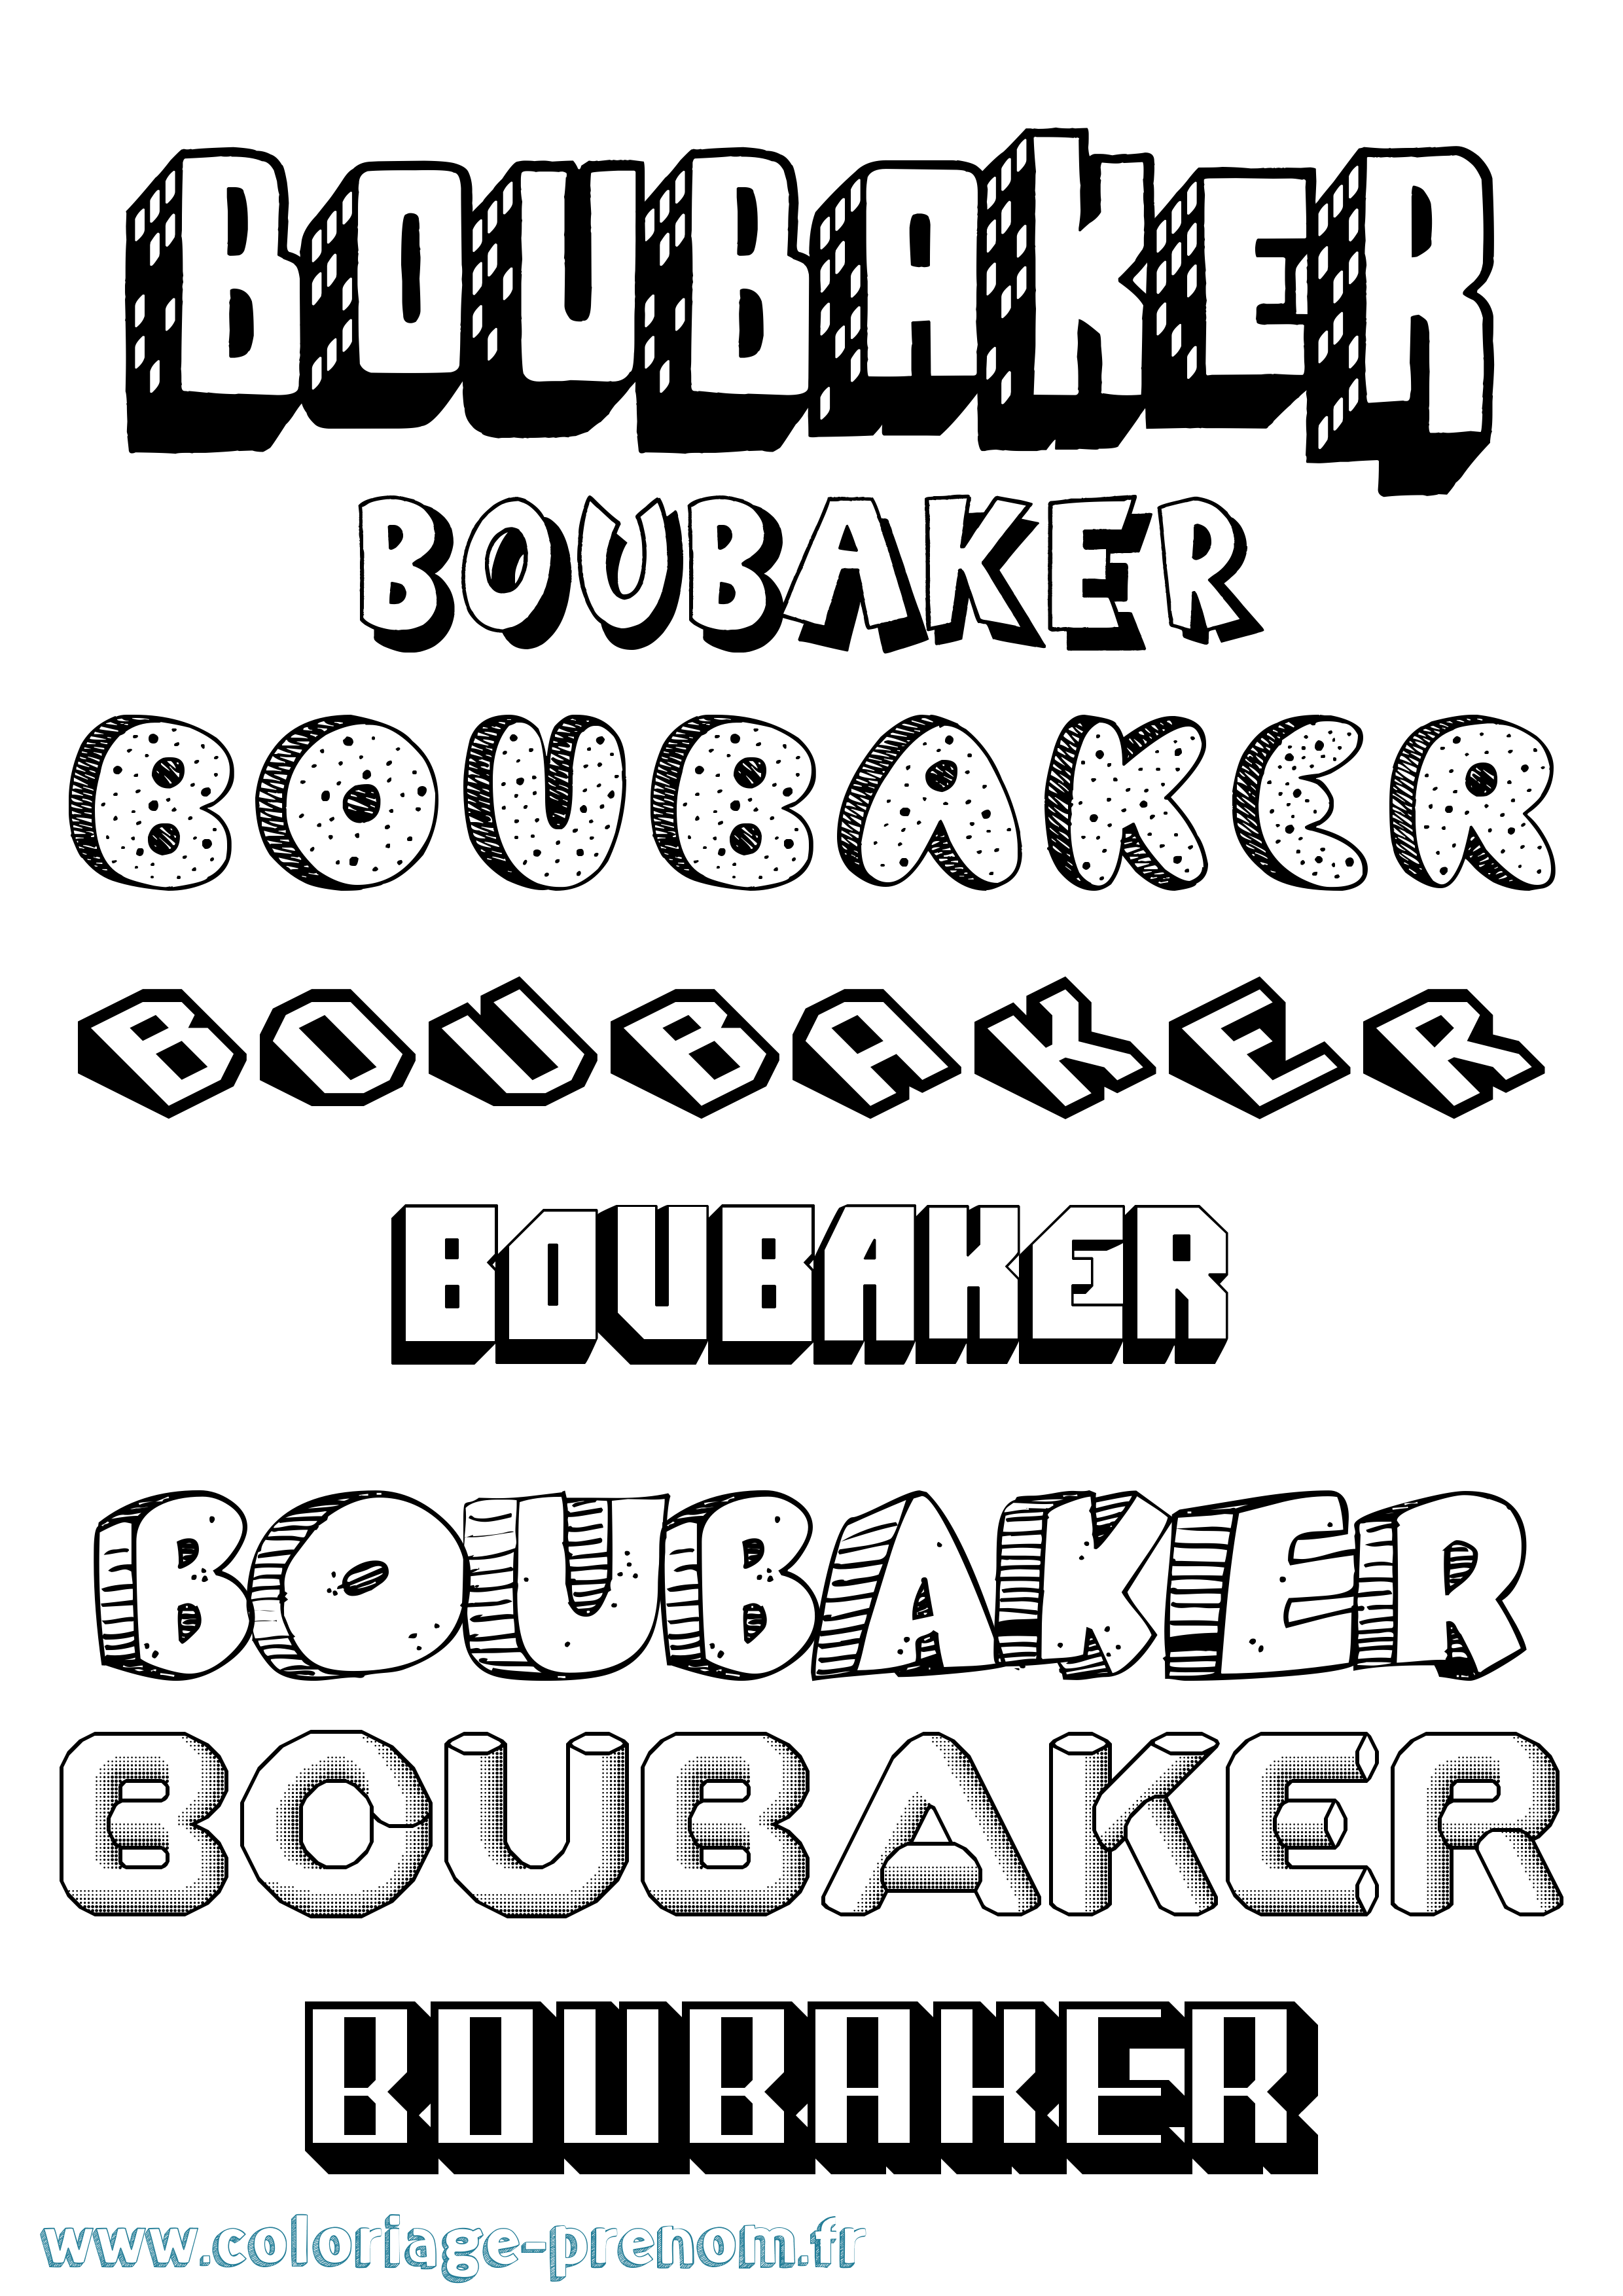 Coloriage prénom Boubaker Effet 3D